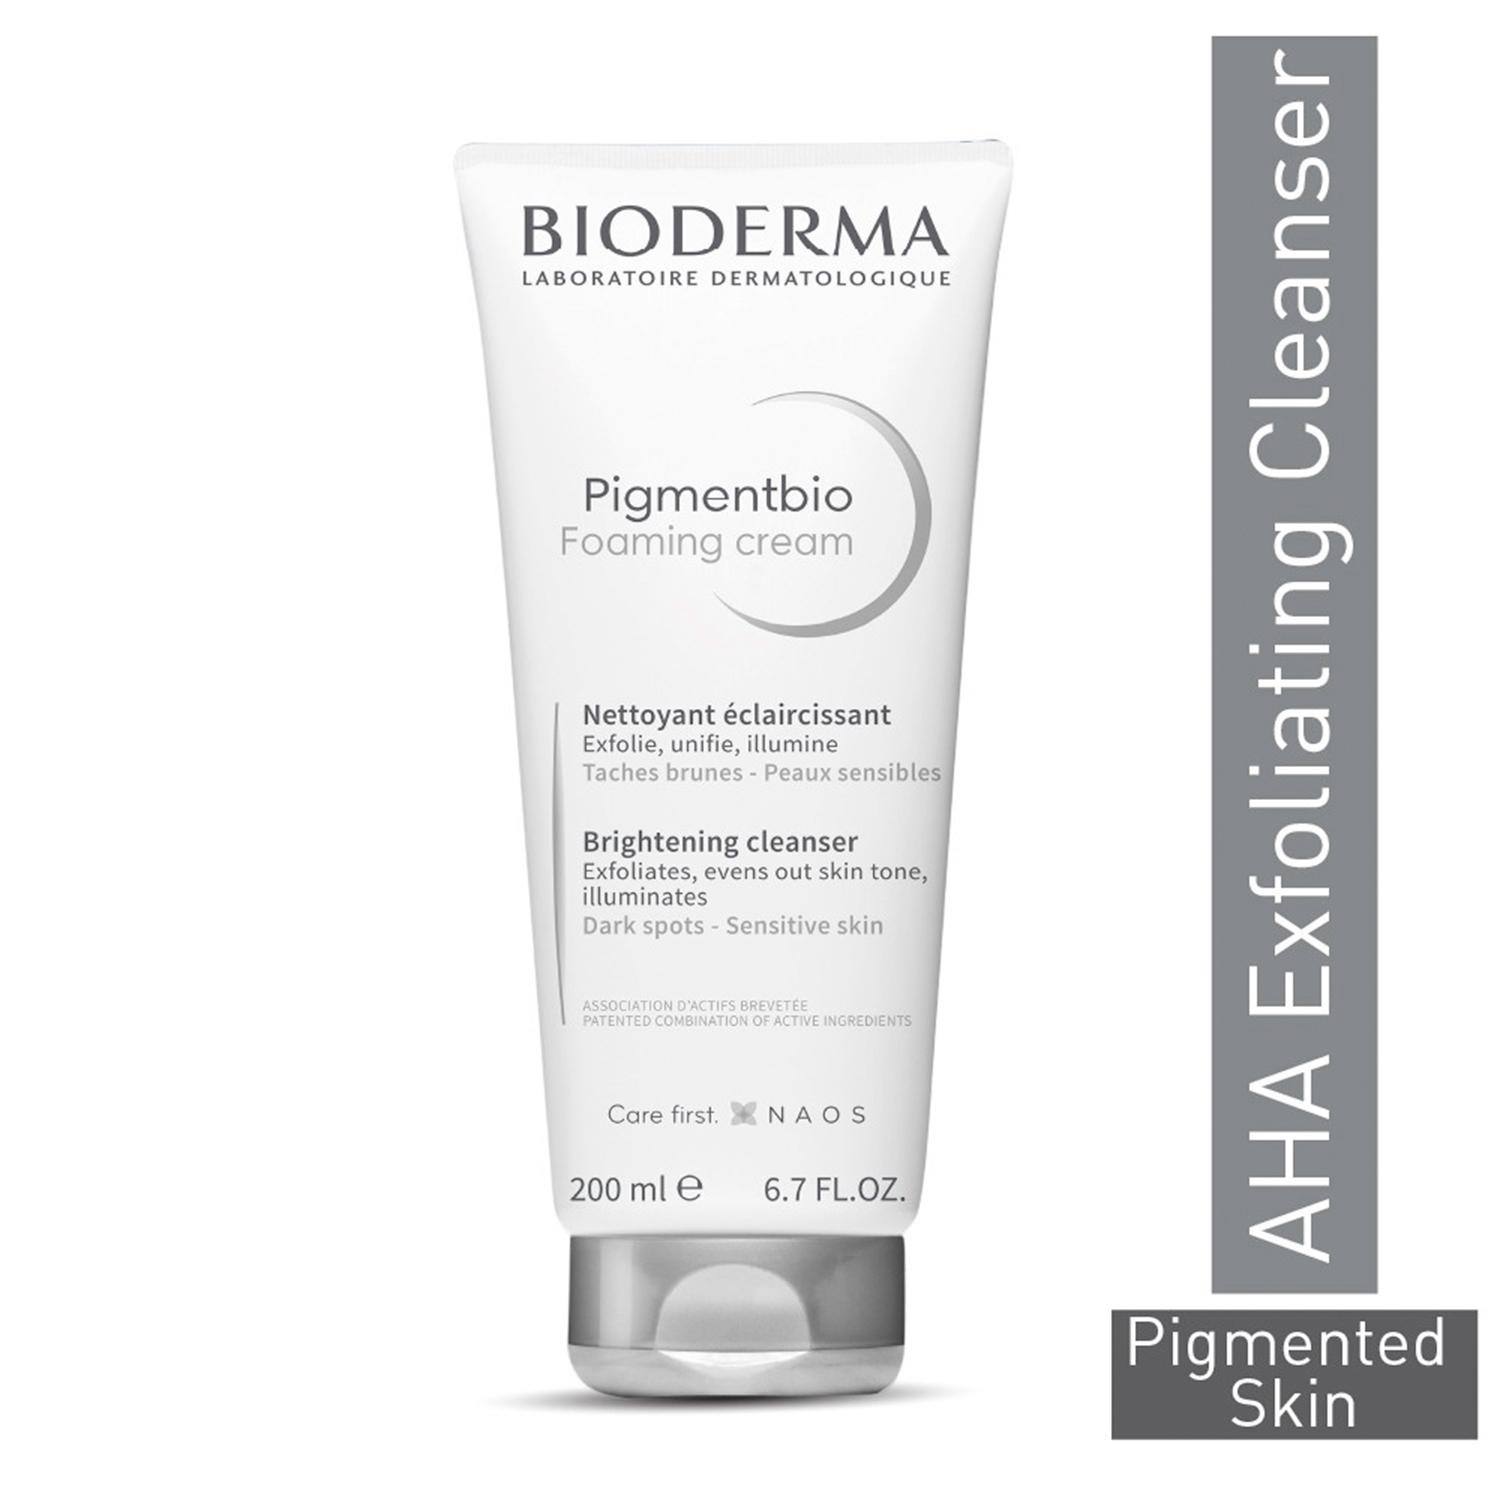 bioderma-pigmentbio-foaming-cream-brightening-exfoliating-cleanser-(200ml)